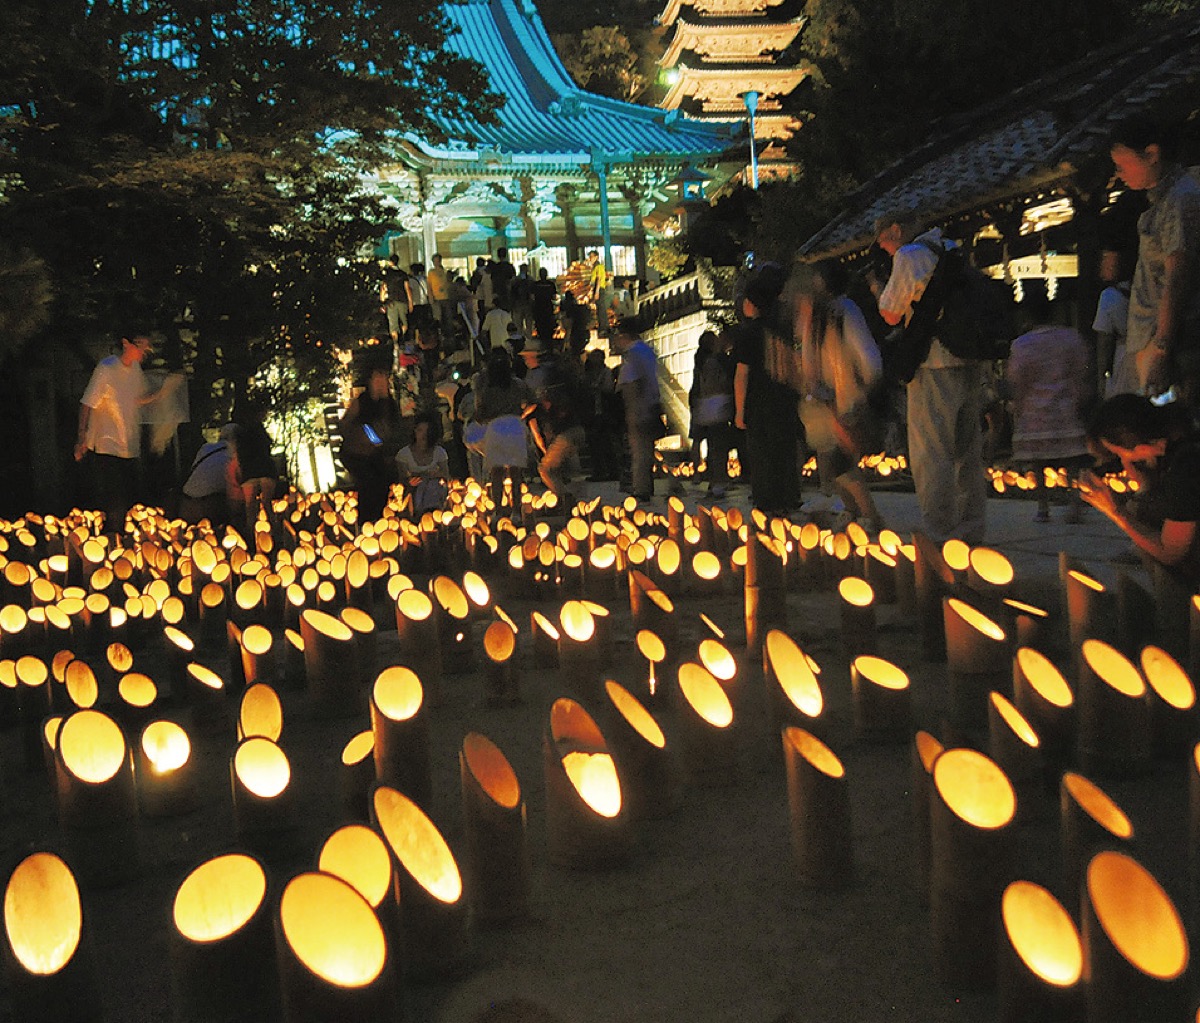 夏祭り中止相次ぐ 江の島灯篭は開催予定 藤沢 タウンニュース